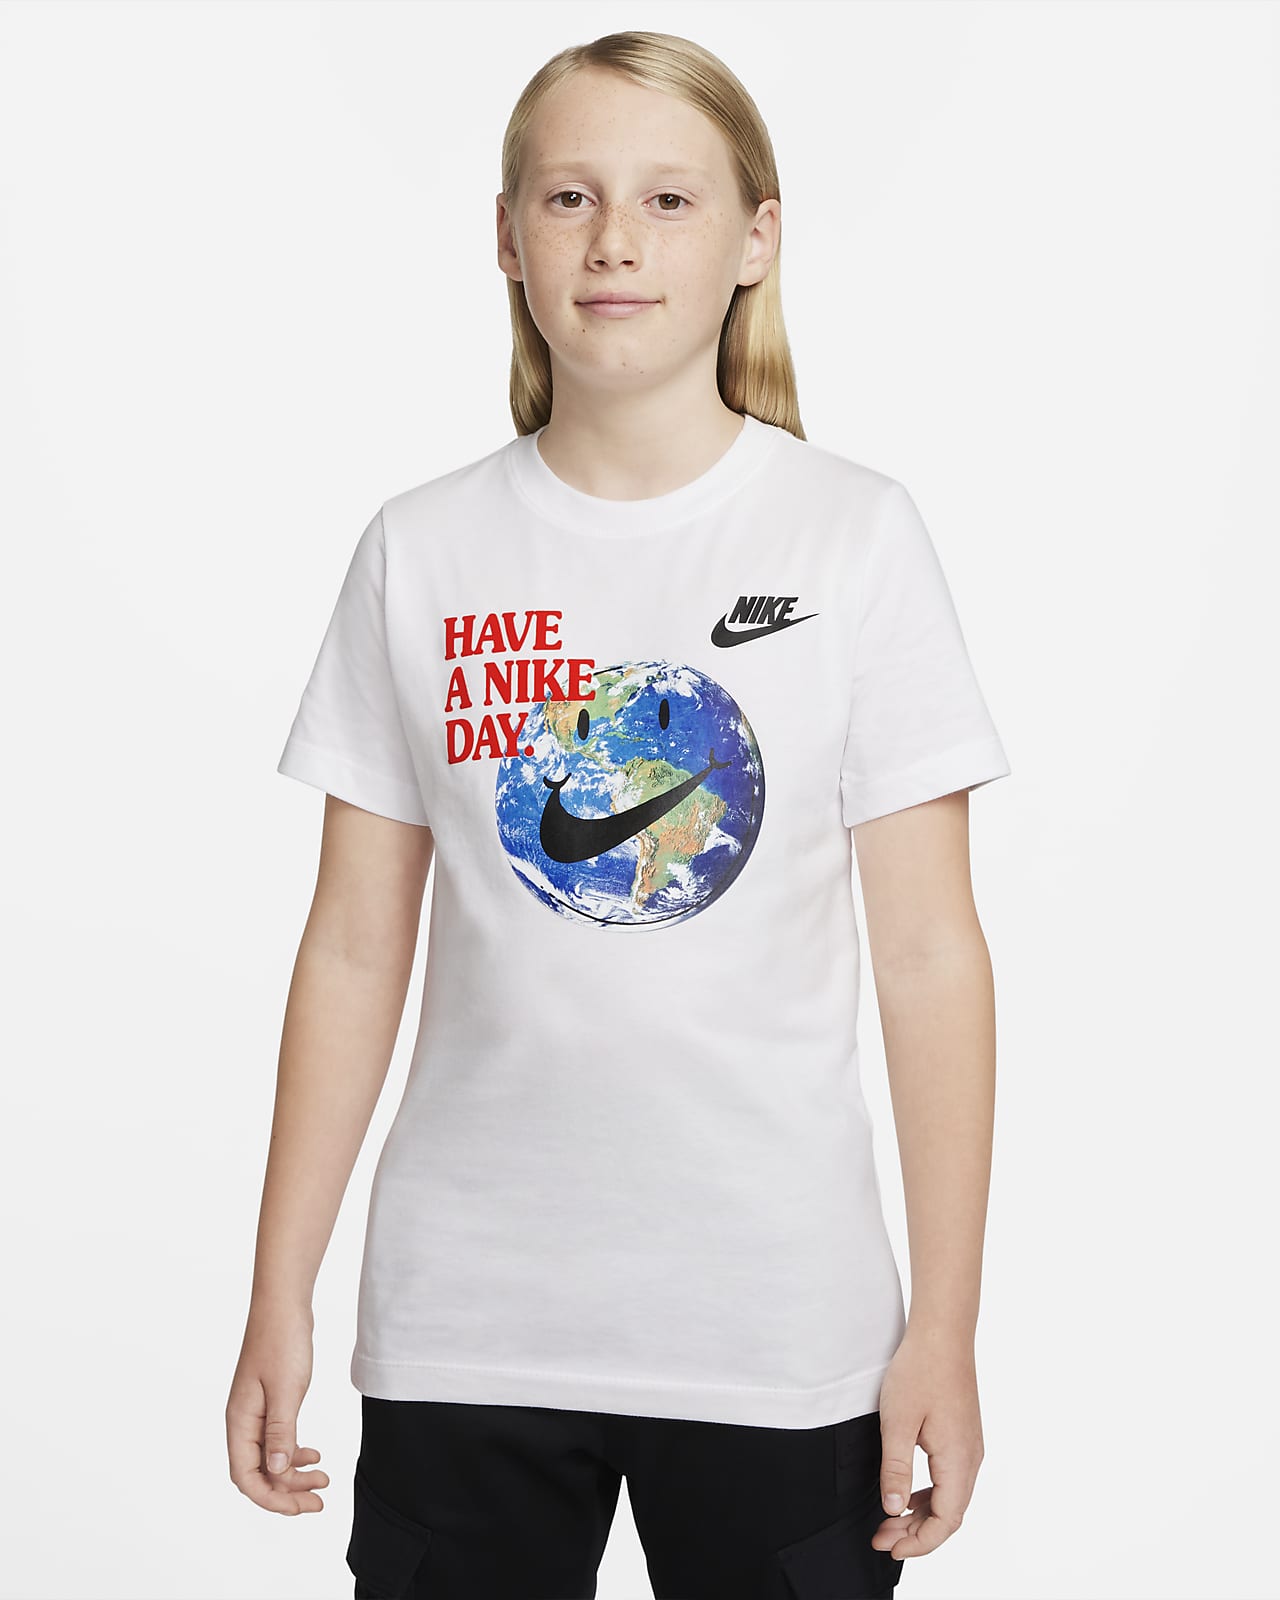 NIKE公式】ナイキ スポーツウェア ジュニア (ボーイズ) Tシャツ.オンラインストア (通販サイト)